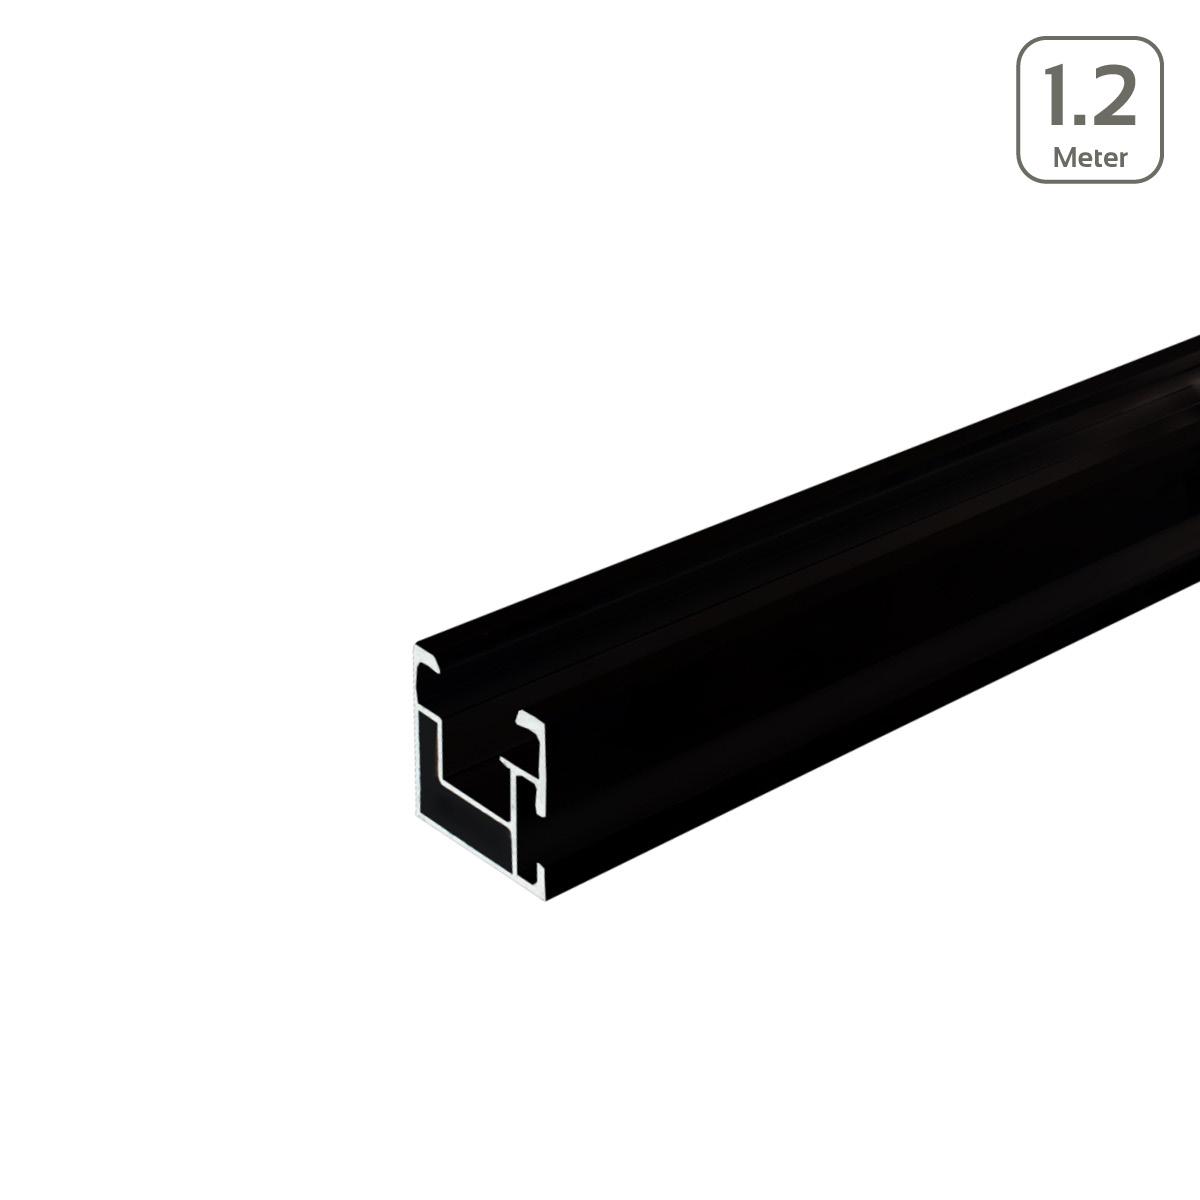 Avanti Profil schwarz eloxiert mit seitlicher Anbindung/Hammerkopfschr. M10 - Länge: 1,2 Meter - MwSt: 19% für Geschäftskunden